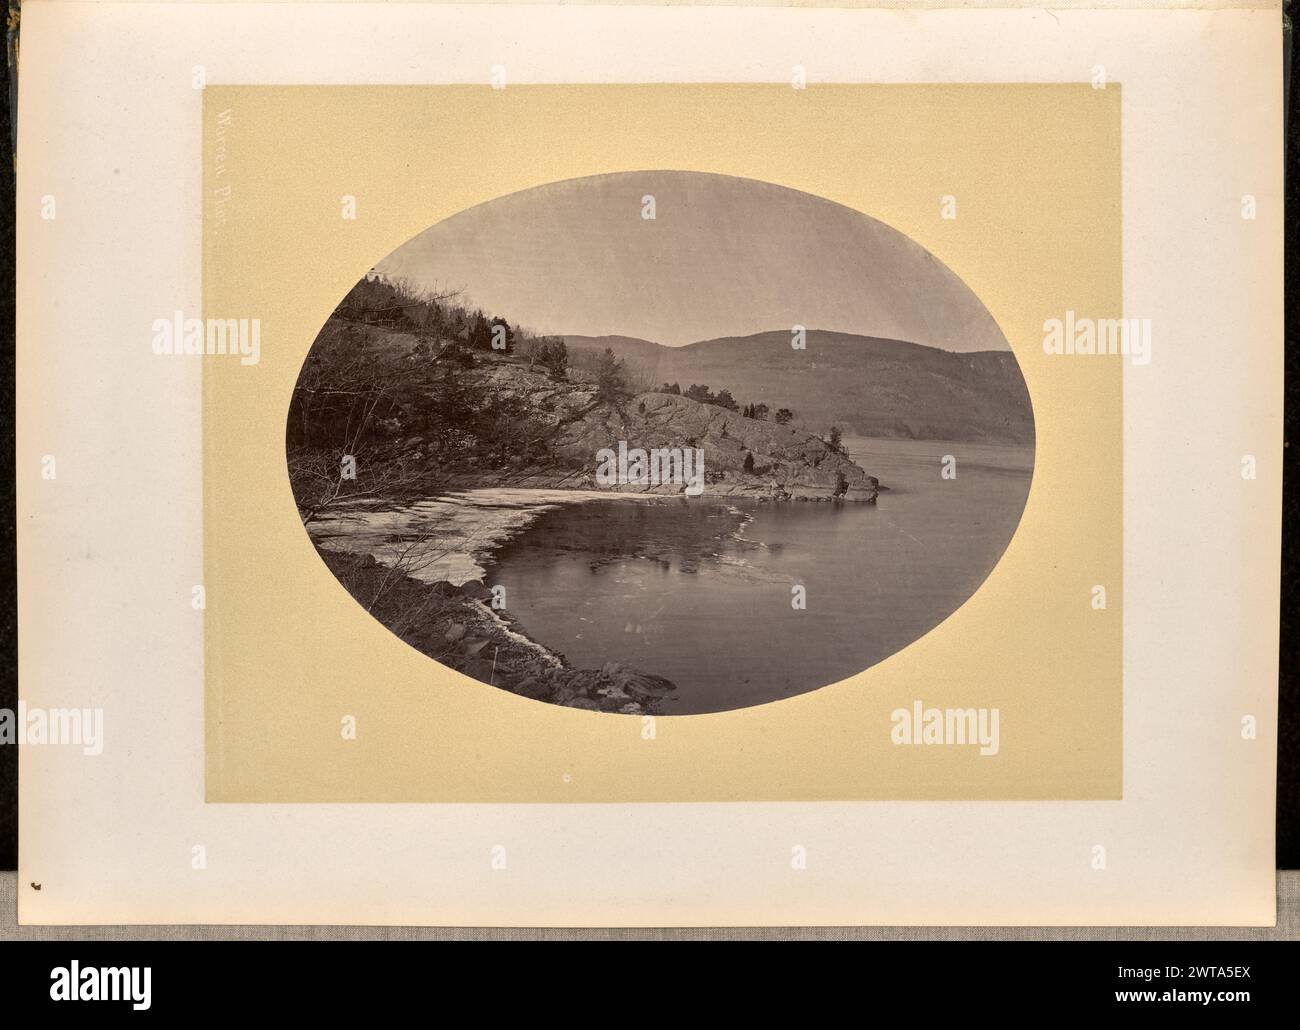 Hudson River, West point. George Kendall Warren, photographe (américain, 1834 - 1884) 1868 vue d'une rive. Une fine couche de glace s'est formée à la surface de la rivière le long du bord de l'eau, dans la partie inférieure gauche de l'image. Banque D'Images